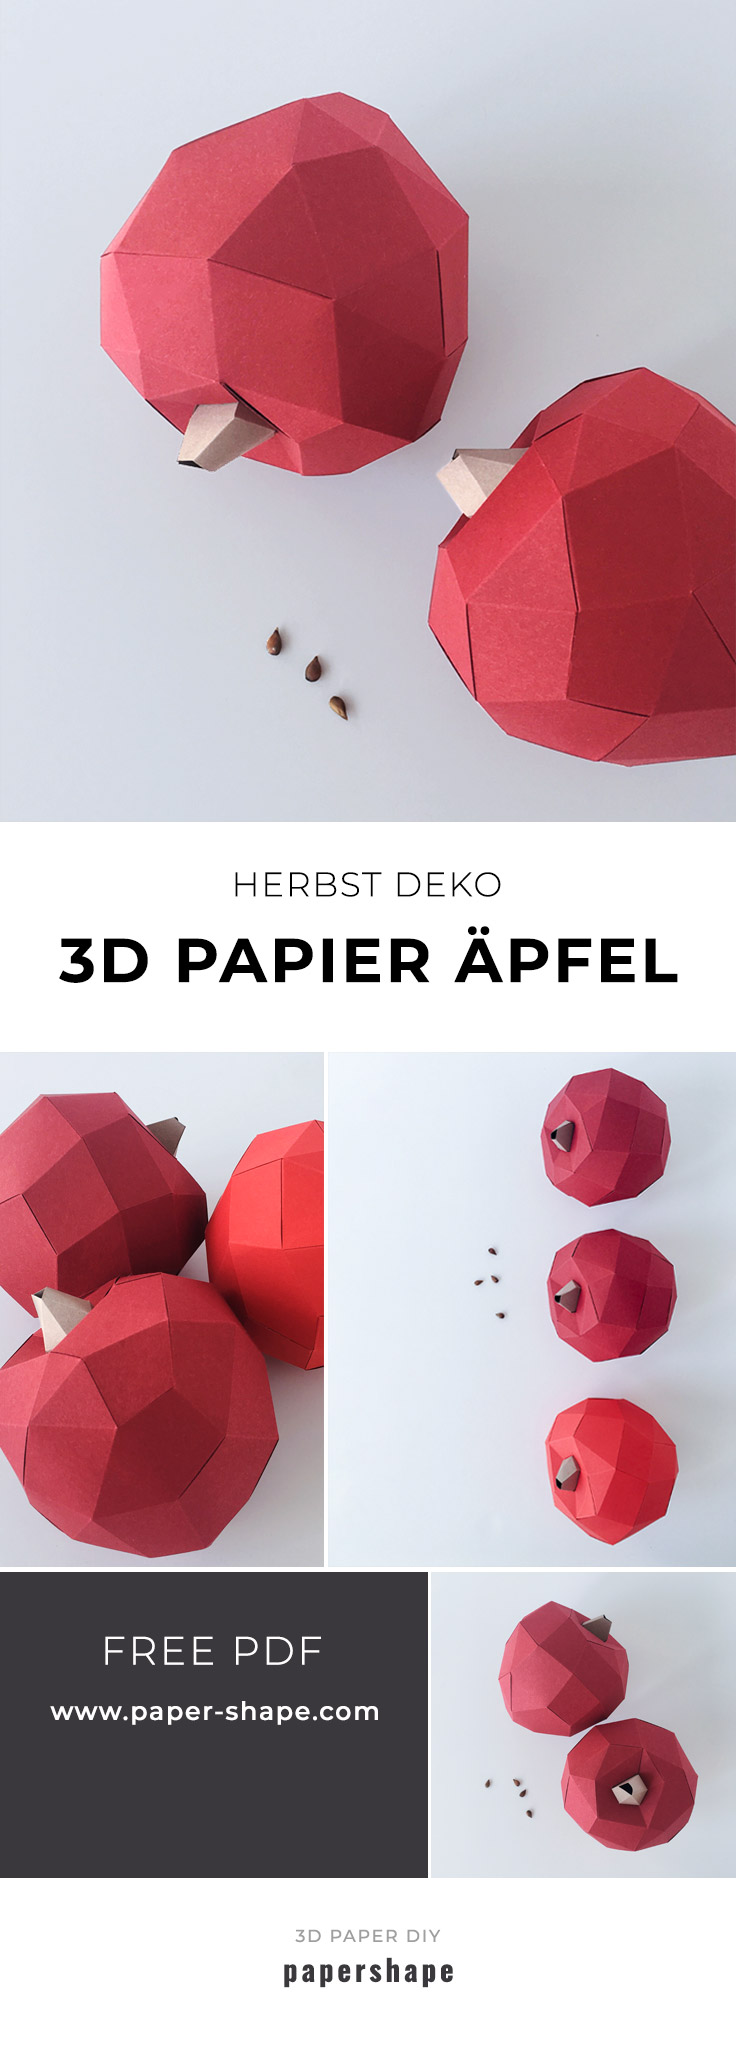 Apfel Herbstdeko basteln aus Papier in 3d mit kostenloser Vorlage. PaperShape #diy #papershape #herbstdeko'